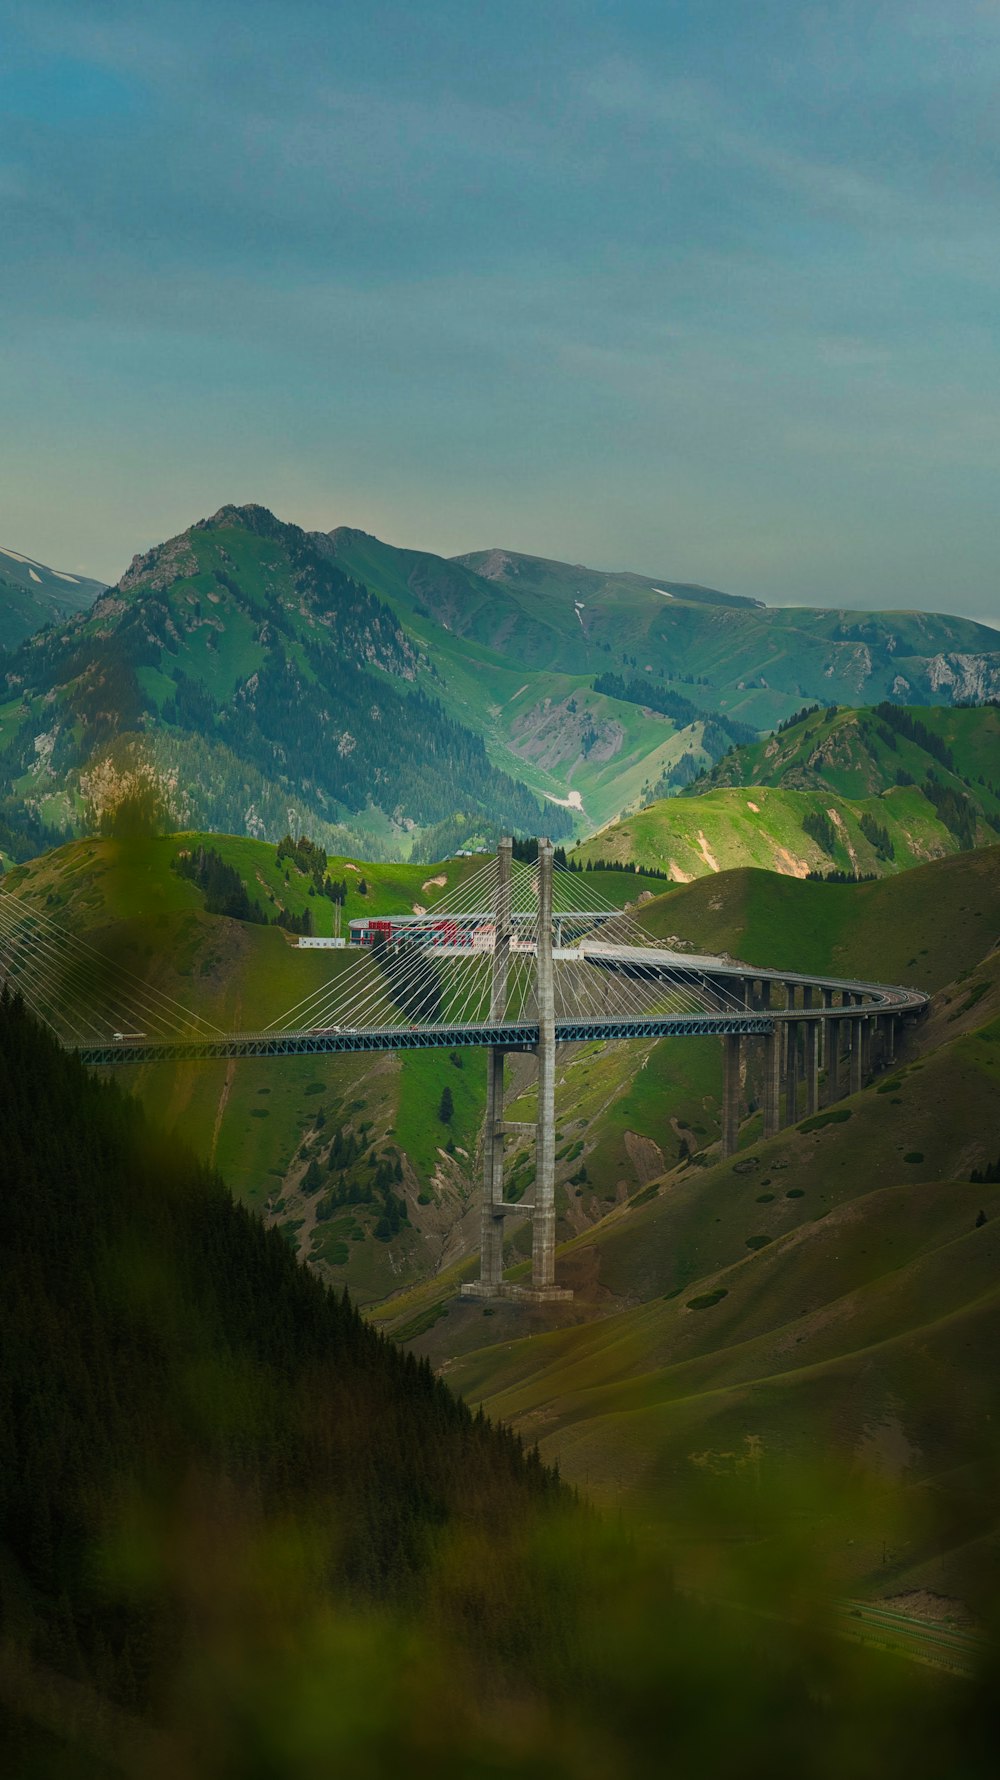 Eine Brücke mitten in einem Tal mit Bergen im Hintergrund